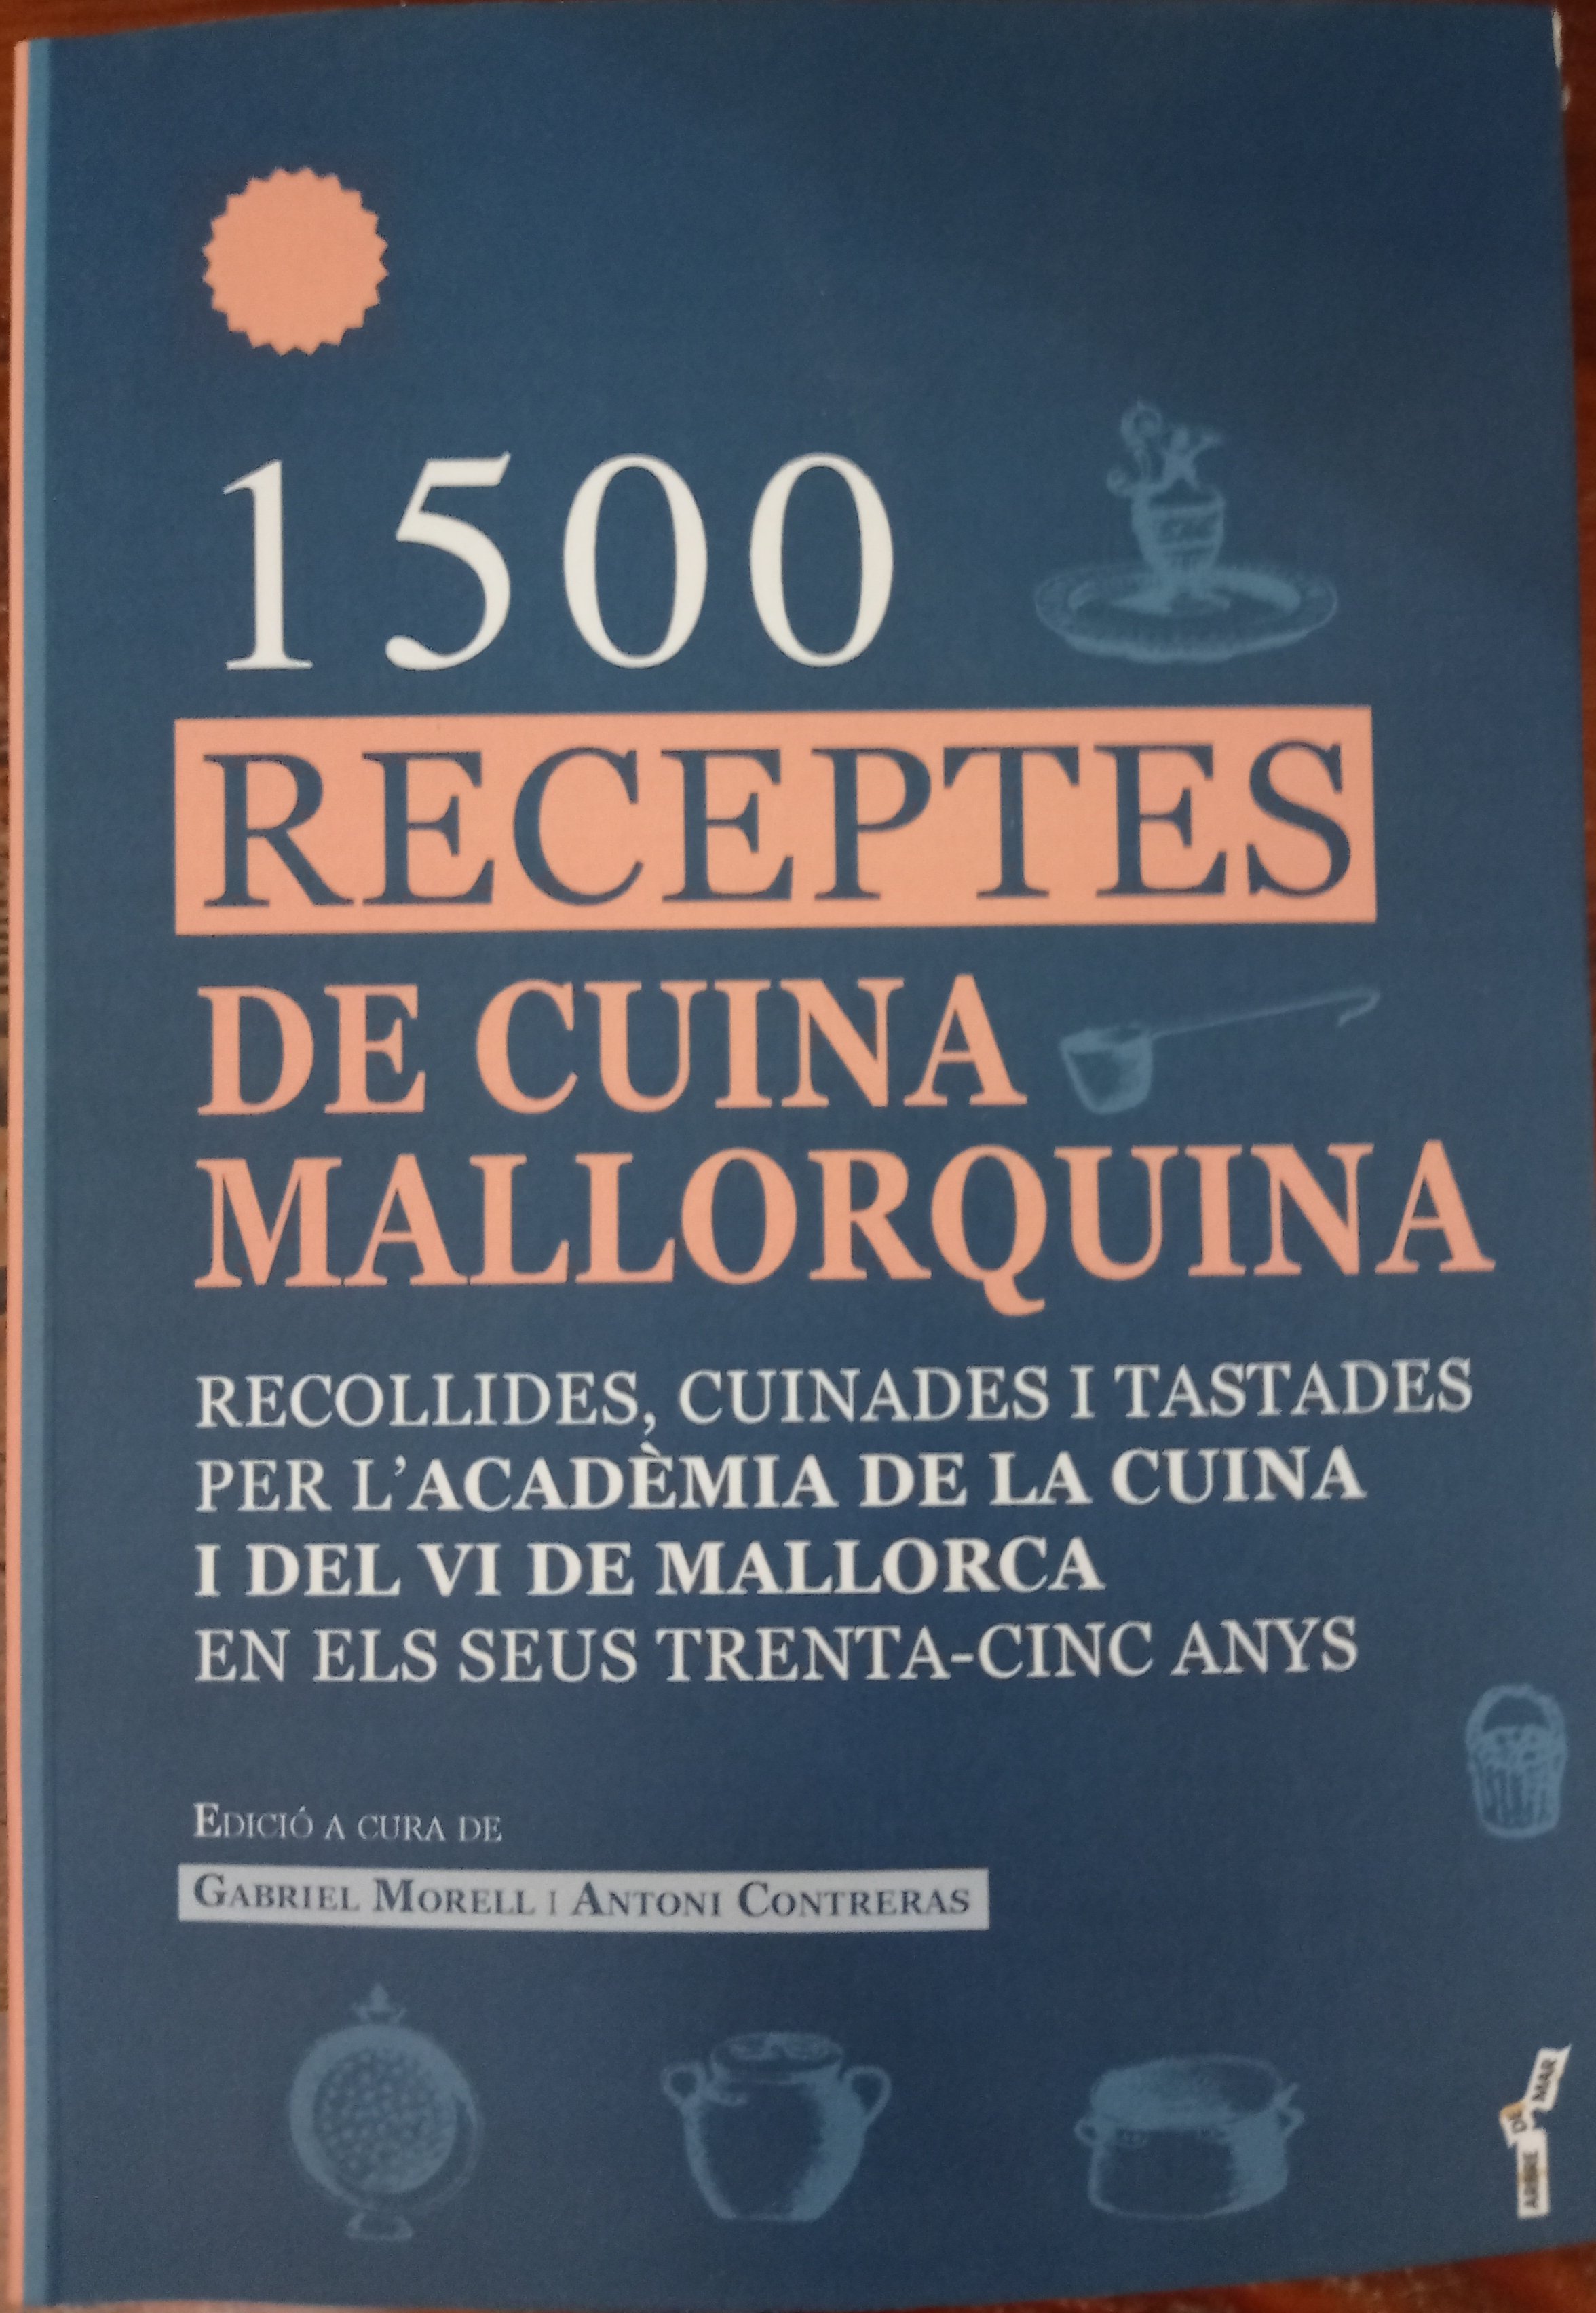 1500 RECEPTES DE CUINA MALLORQUINA 